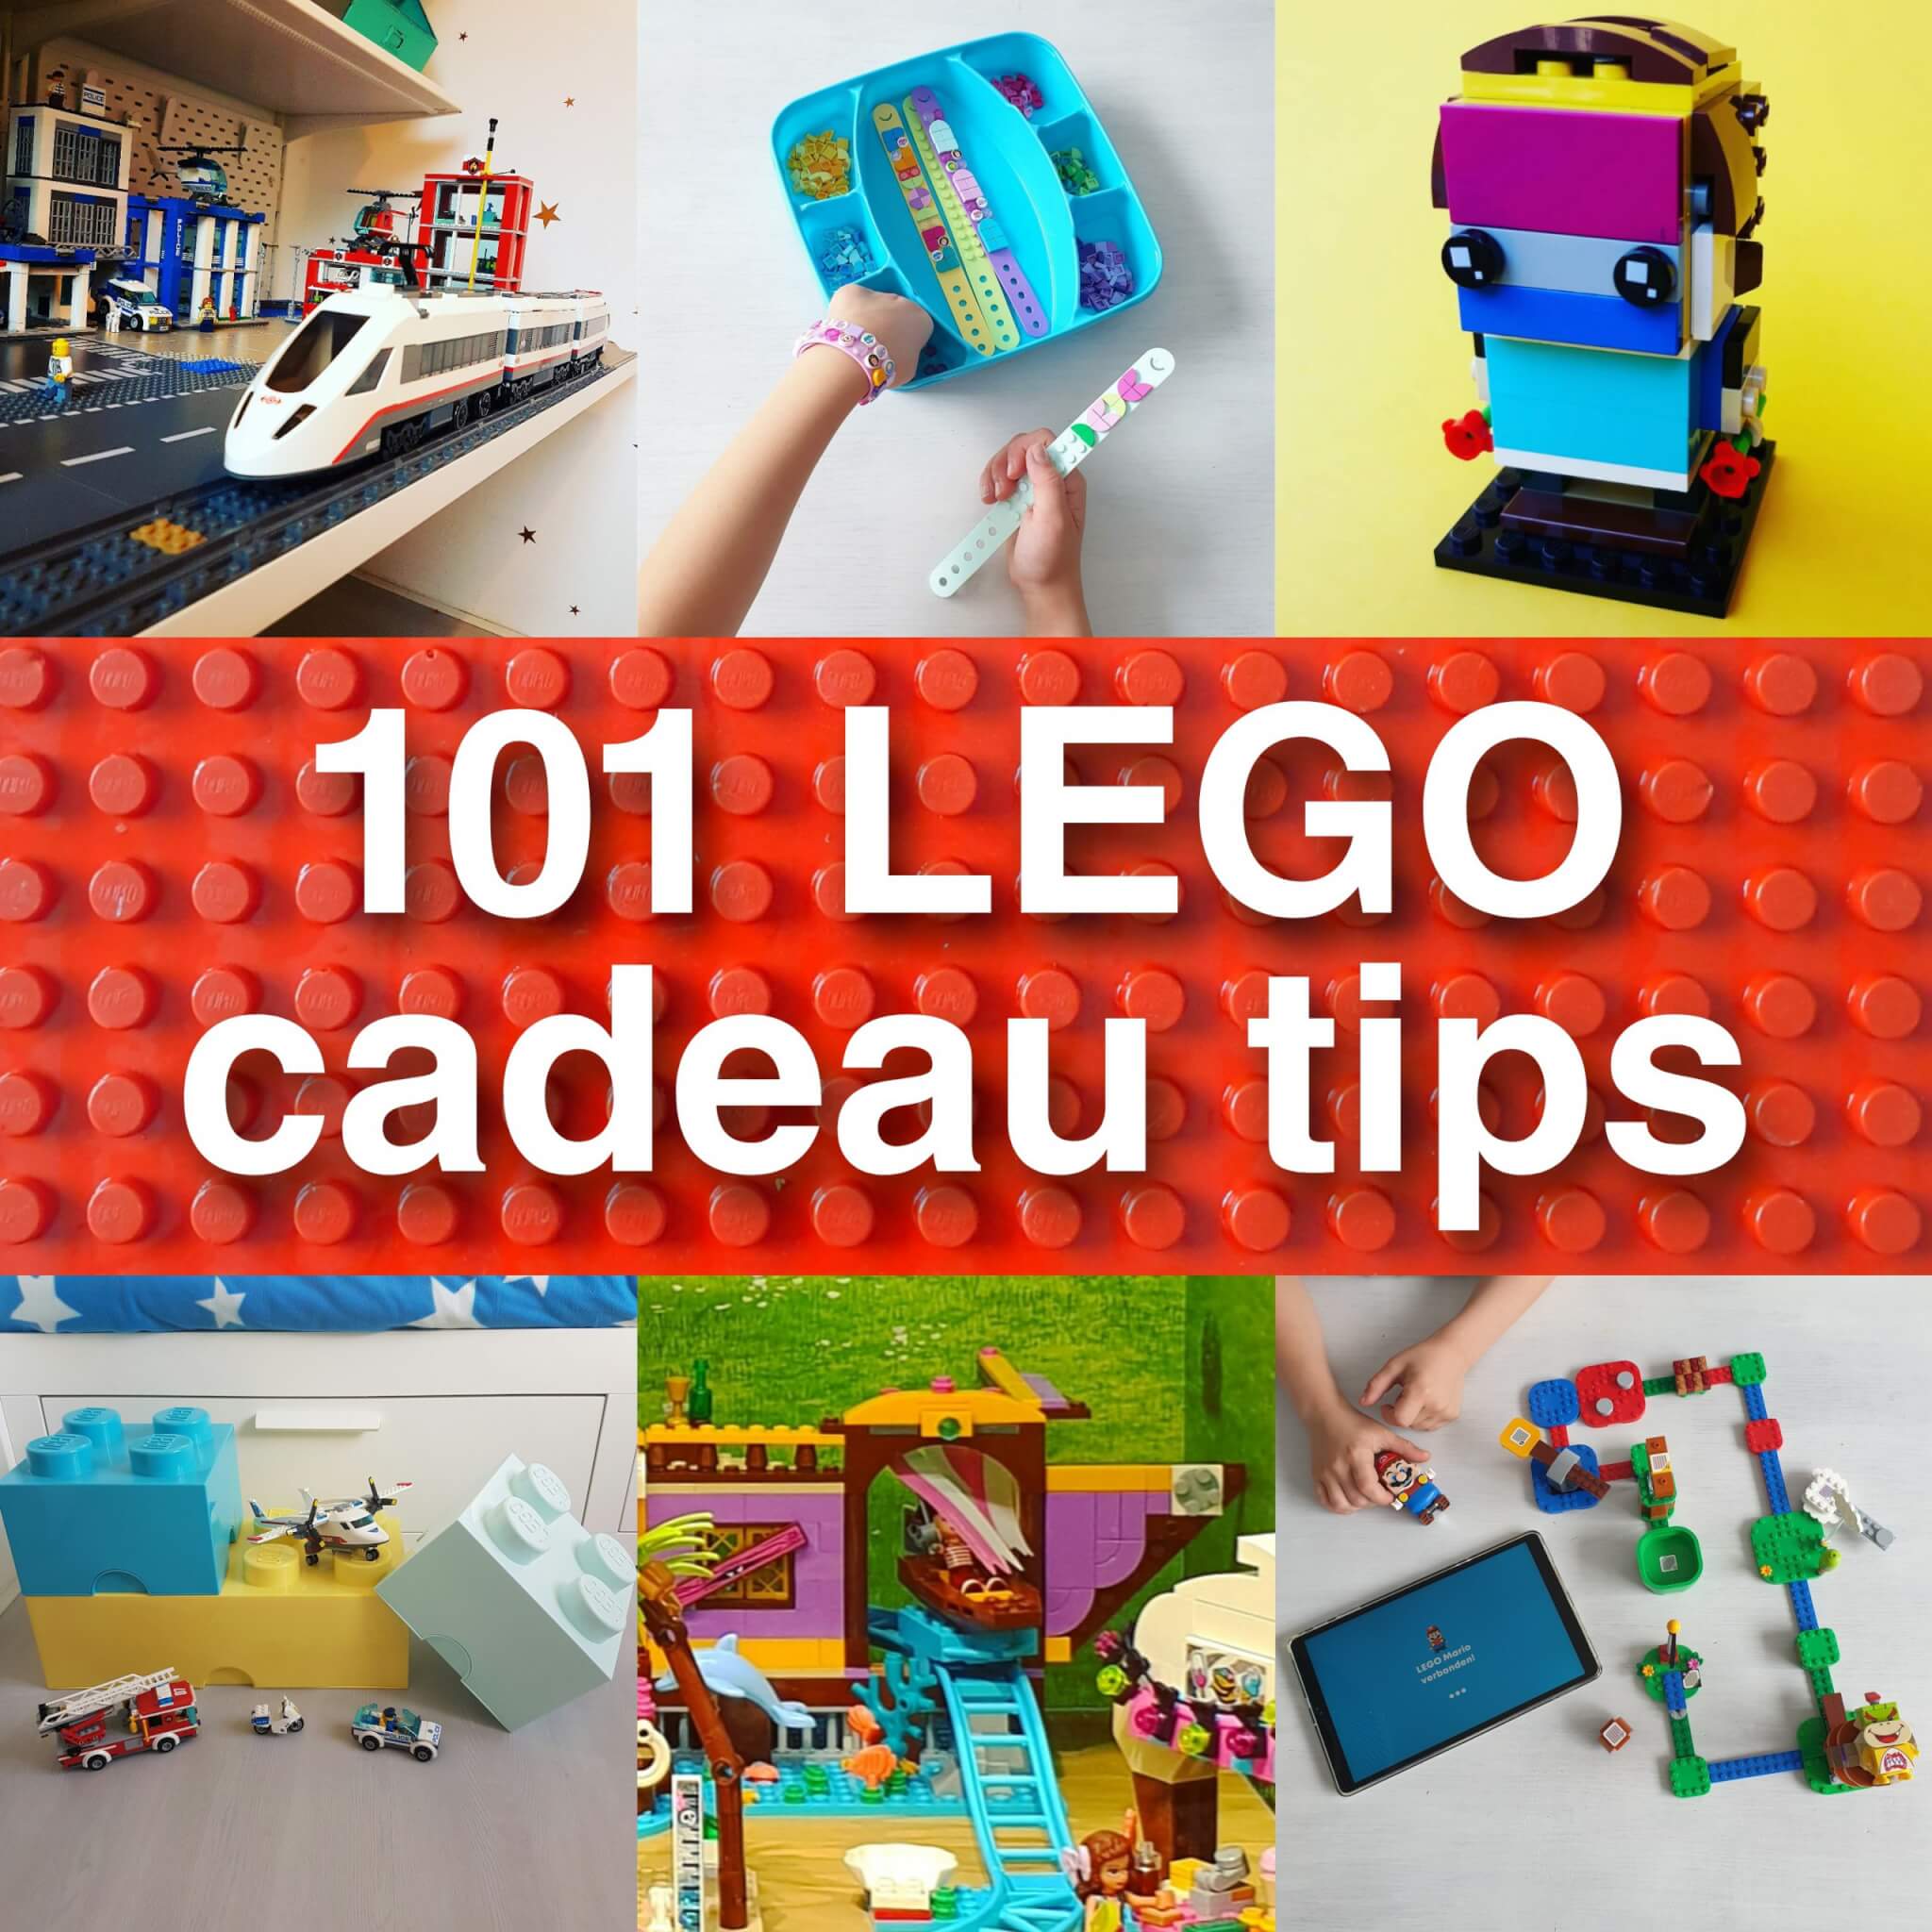 LEGO cadeau ideeën: onze tips voor van leeftijden Leuk met kids